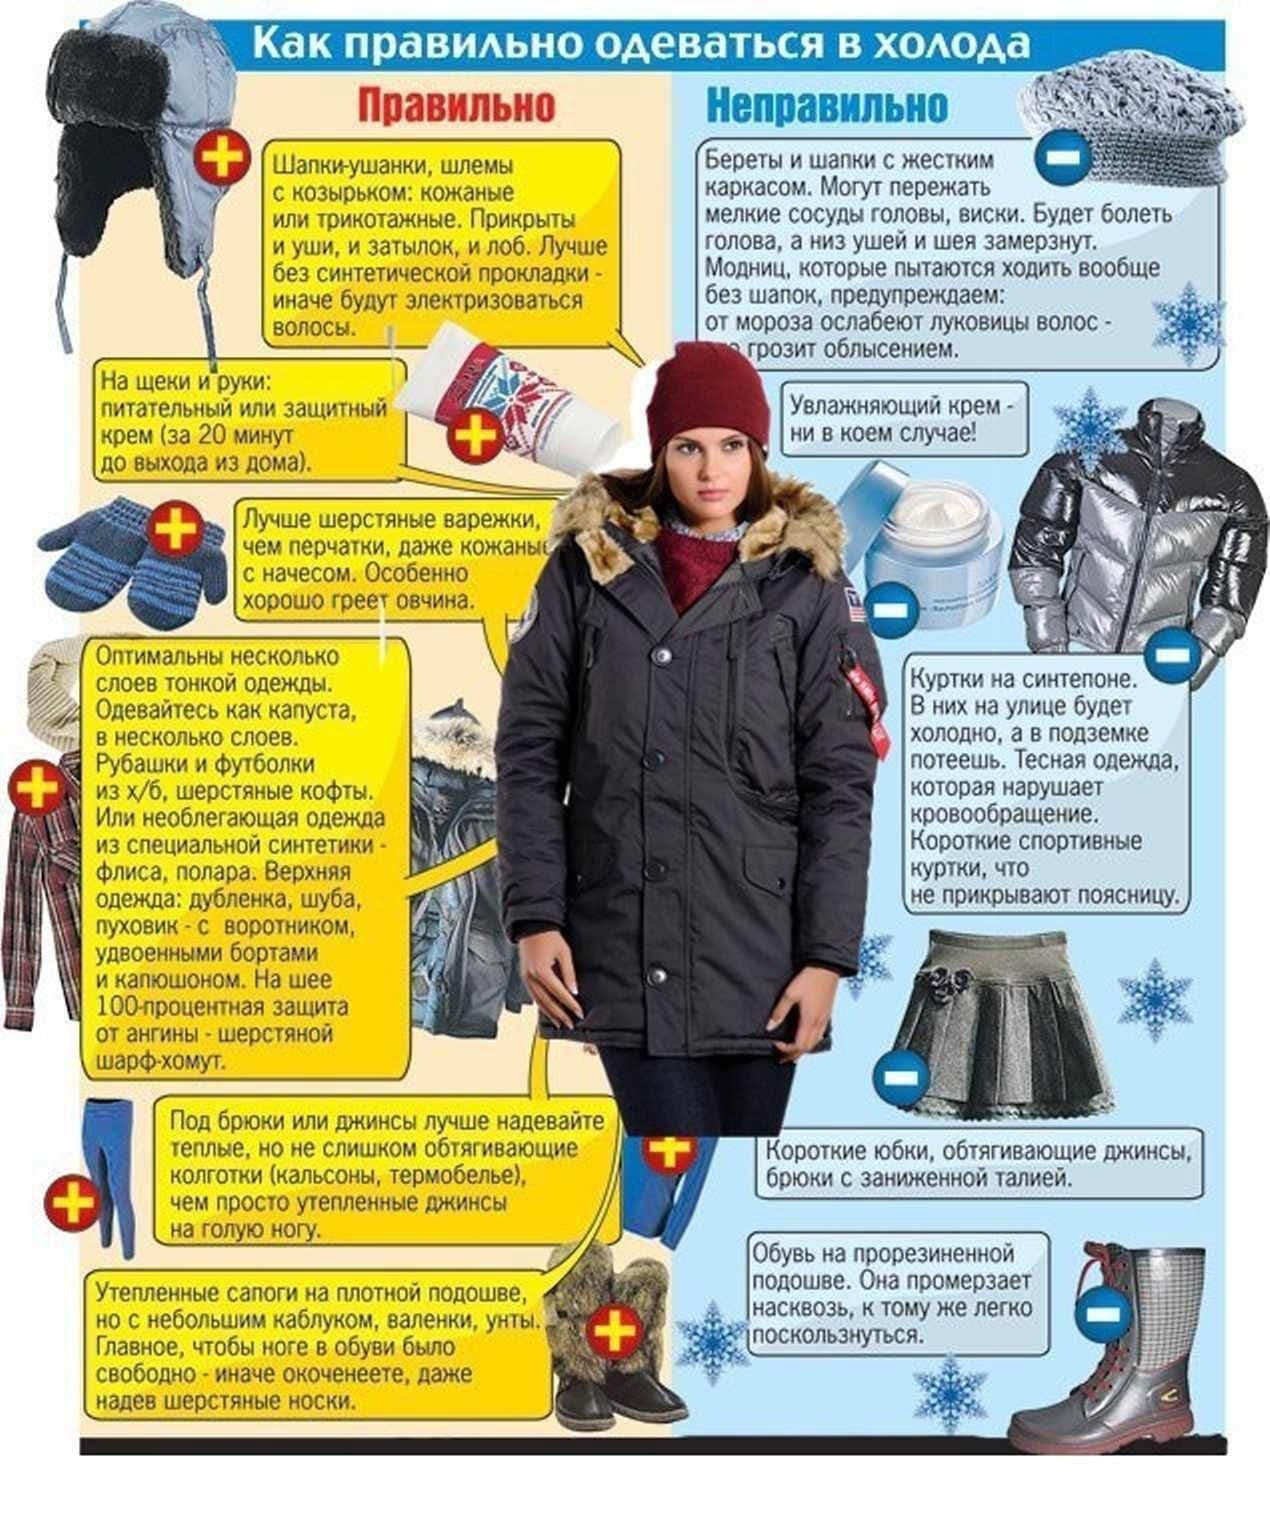 Почему нужен холод. Правильная одежда зимой. КВК правилтео одеватся. Как правильно одеваться зимой. Одеваться зимой в Мороз.